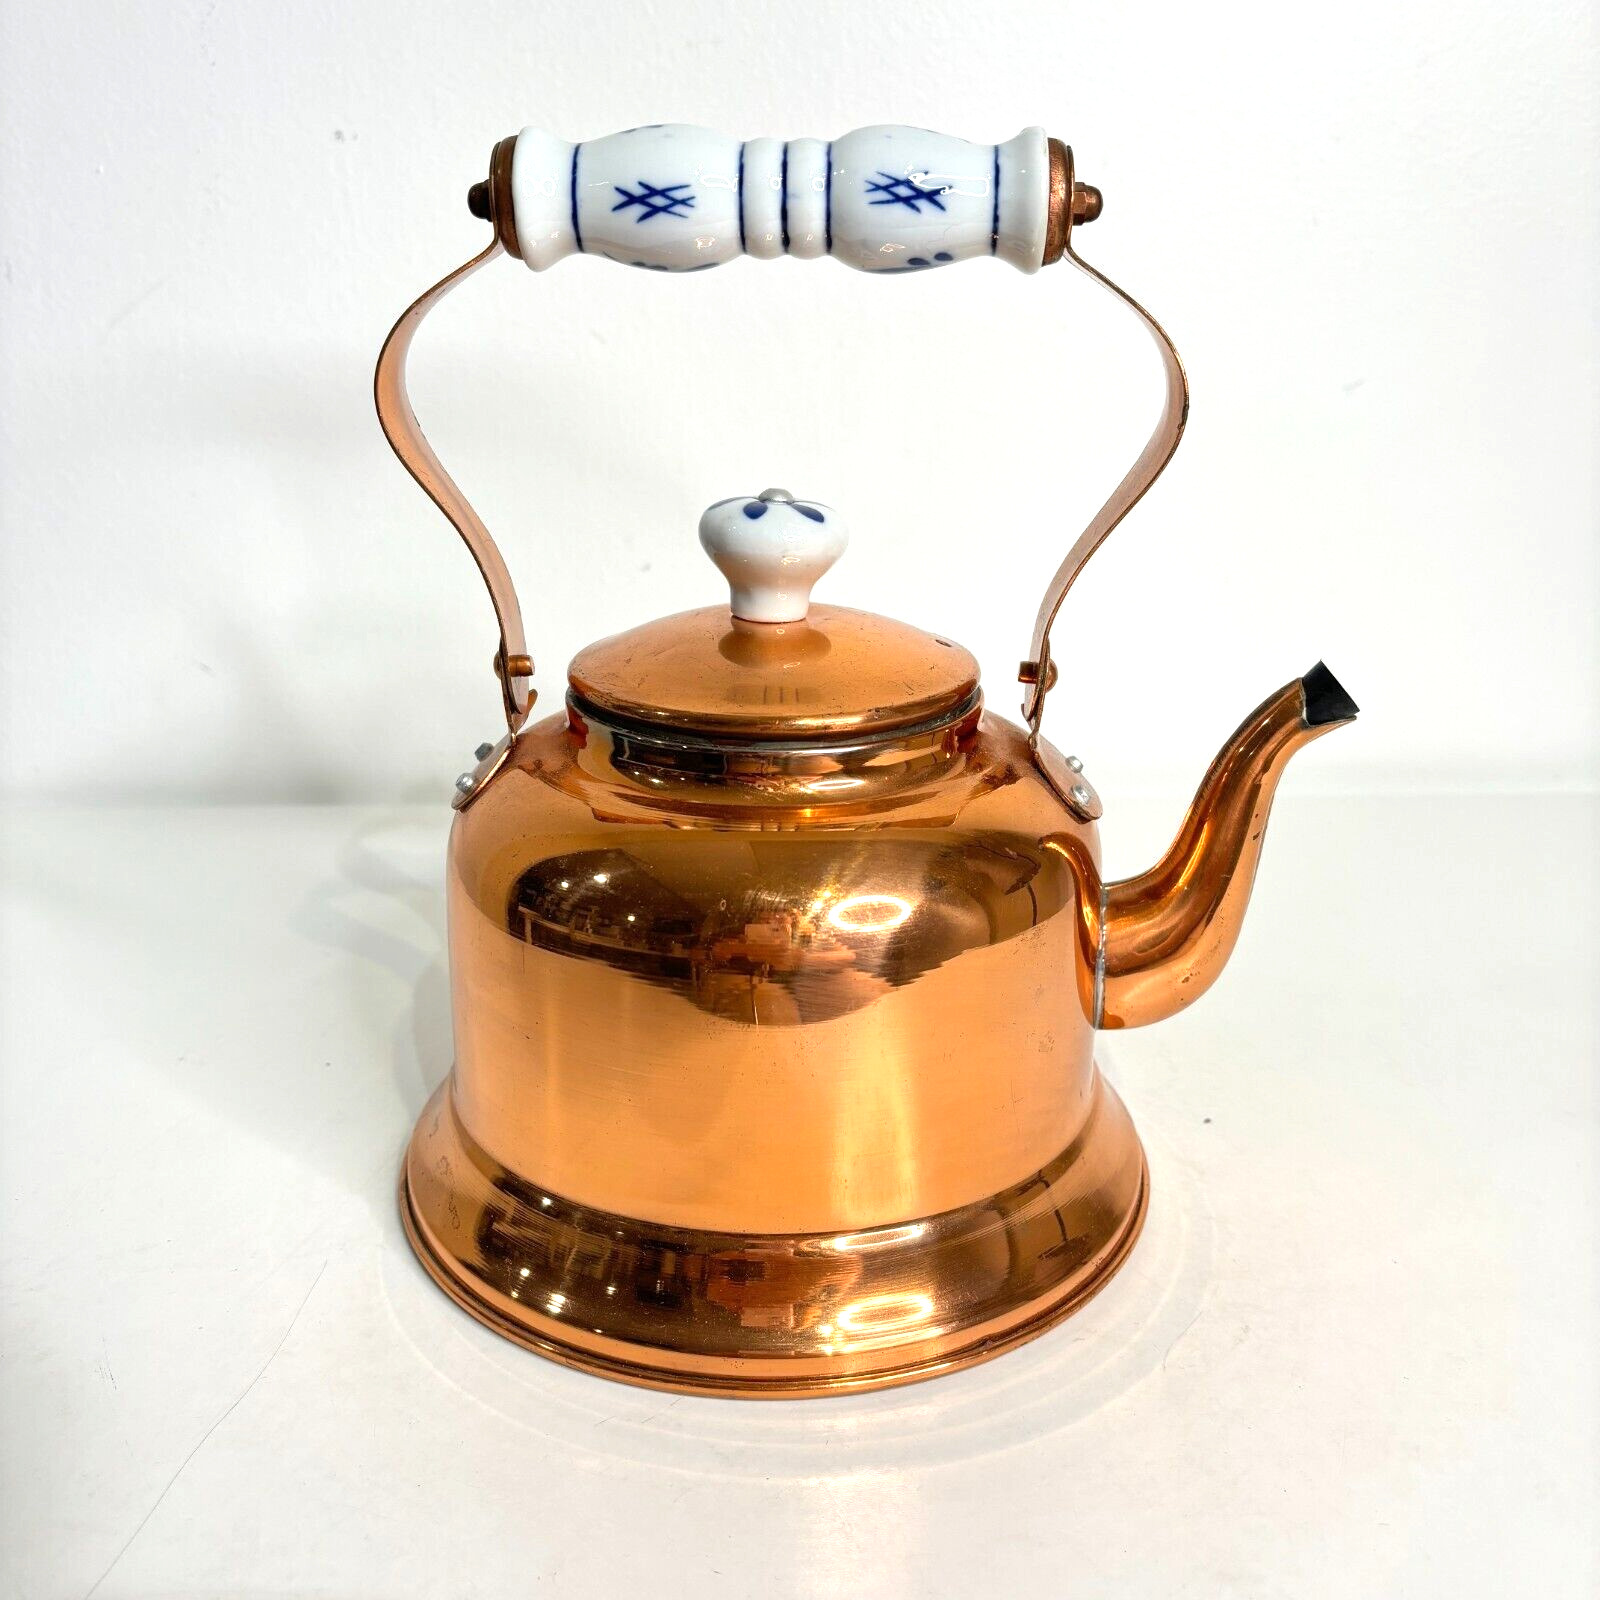 Vintage Copper Tea Pot Kettle With Blue White Delft Porcelain Handle Lid New